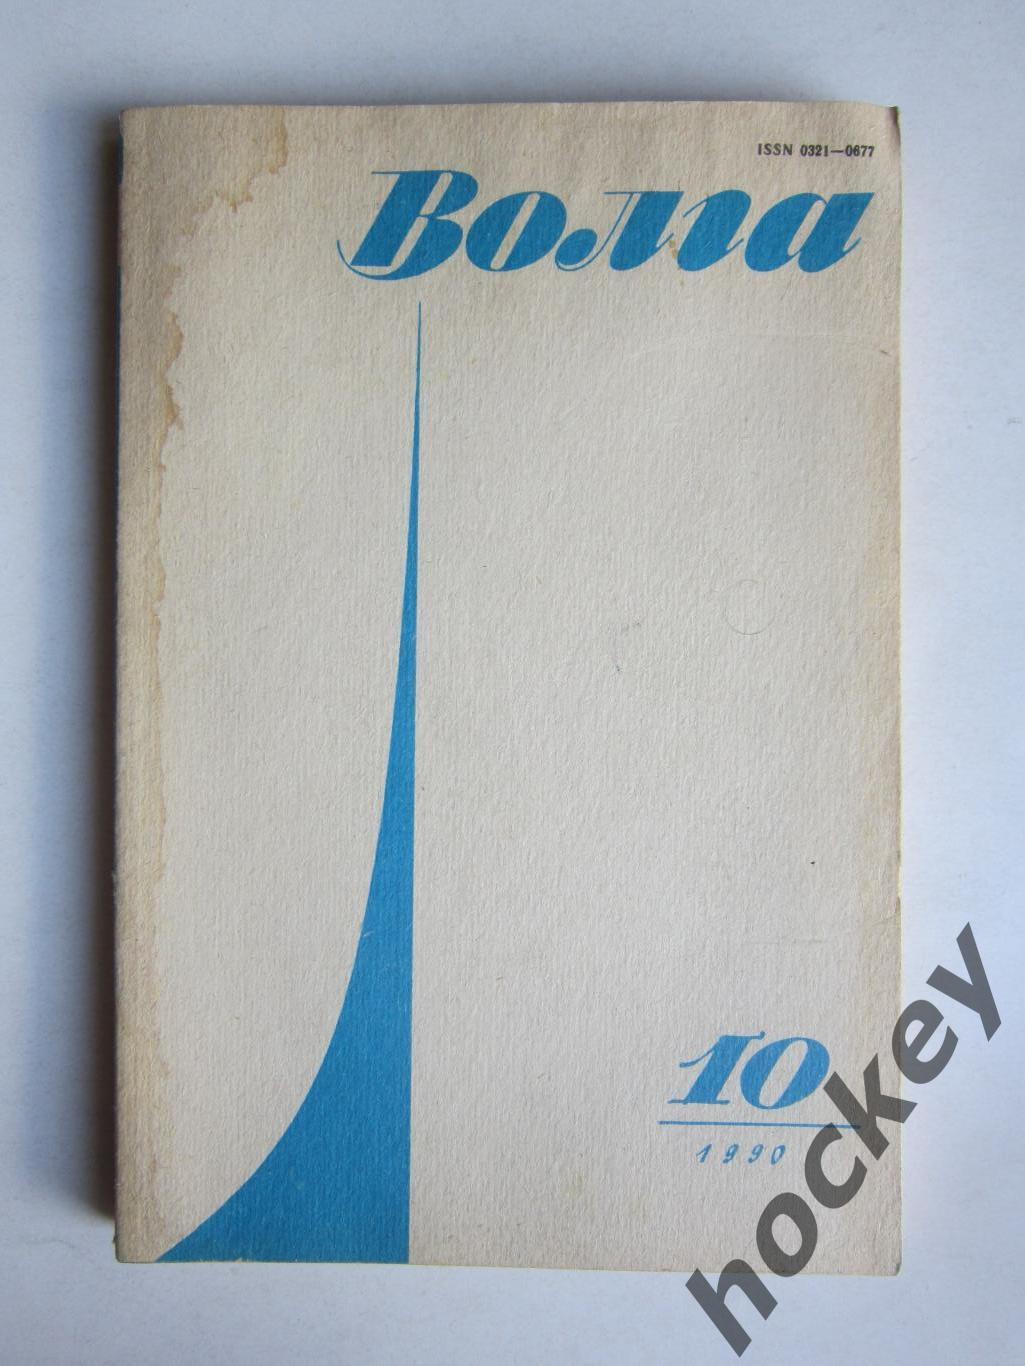 Журнал Волга № 10.1990